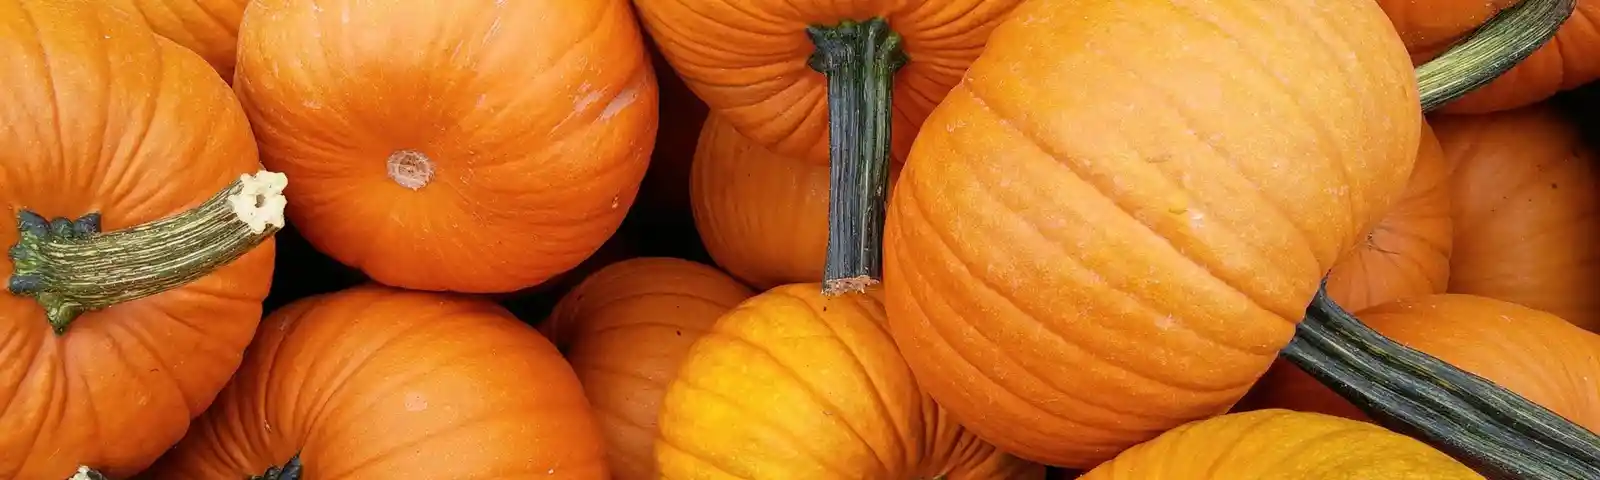 pumpkin-1683635_1920.jpg